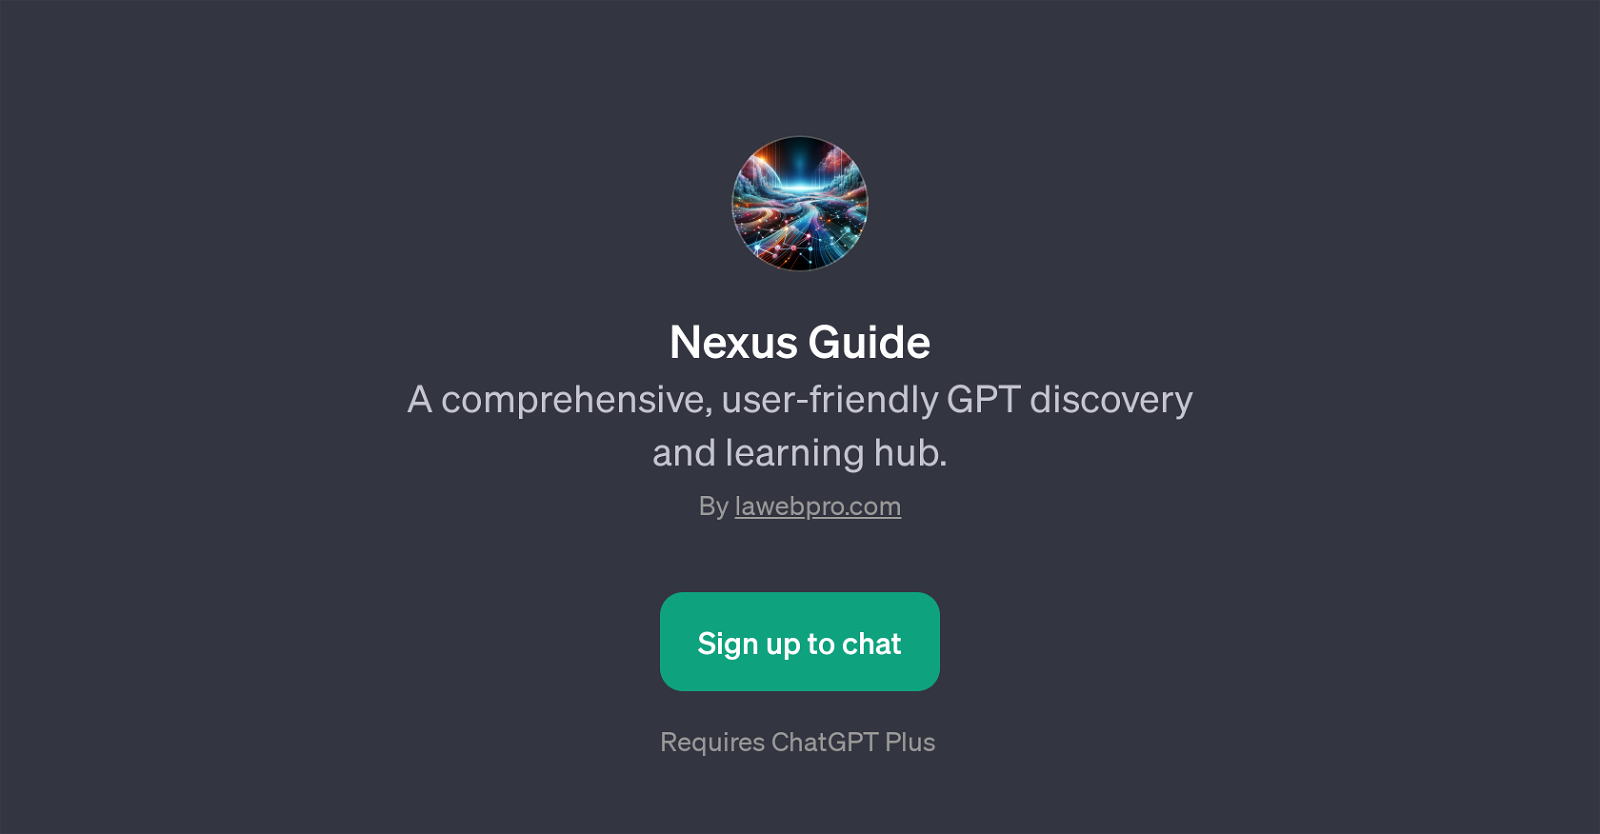 Nexus Guide website